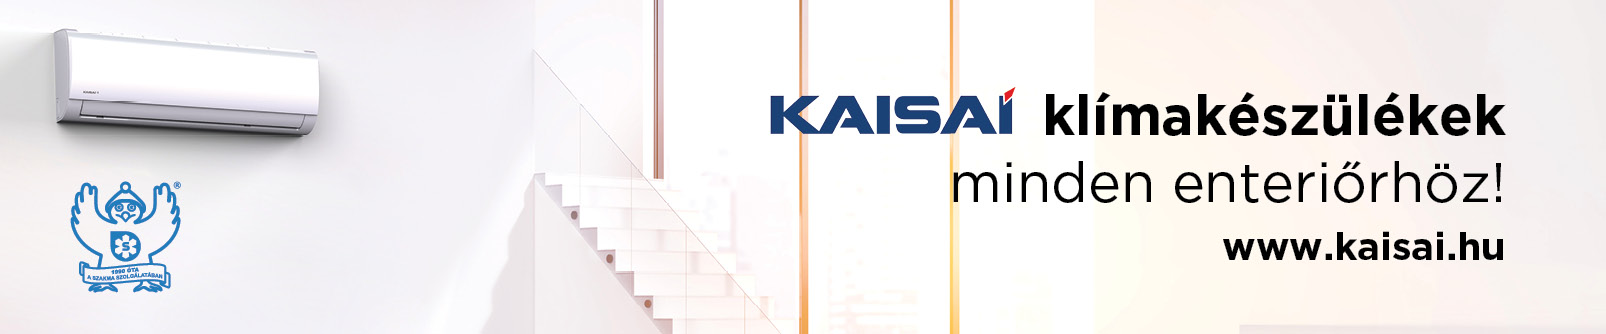 www.kaisai.hu